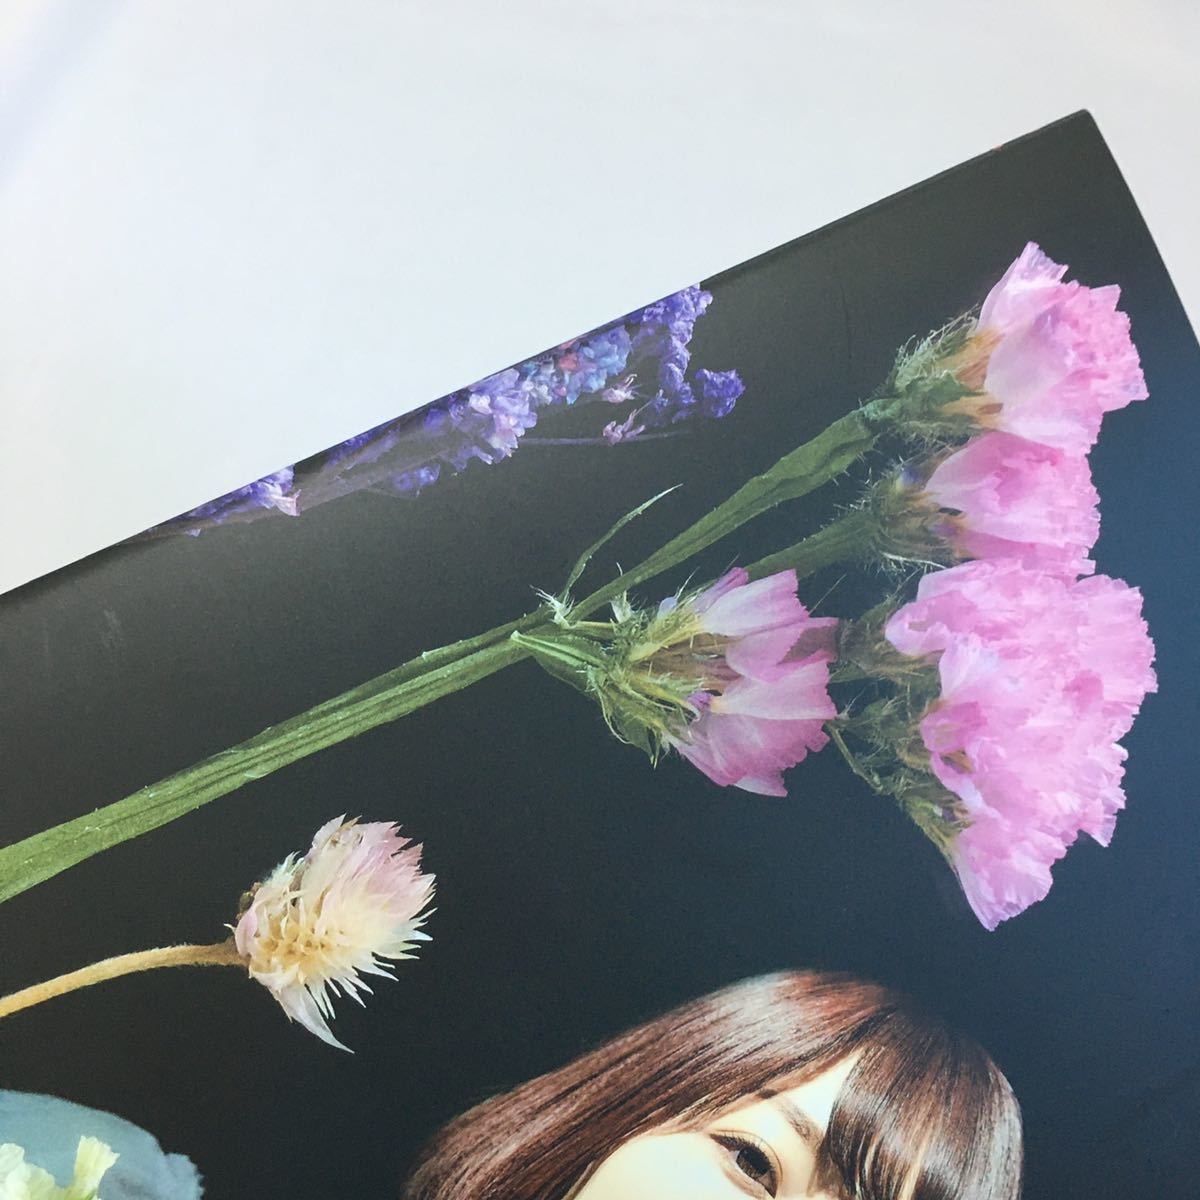 [ 2022年 ] 花澤香菜 Live 2022 blossom パンフレット 写真 インタビュー コメント HANAZAWA KANA グッズ 冊子 アルバム_画像5